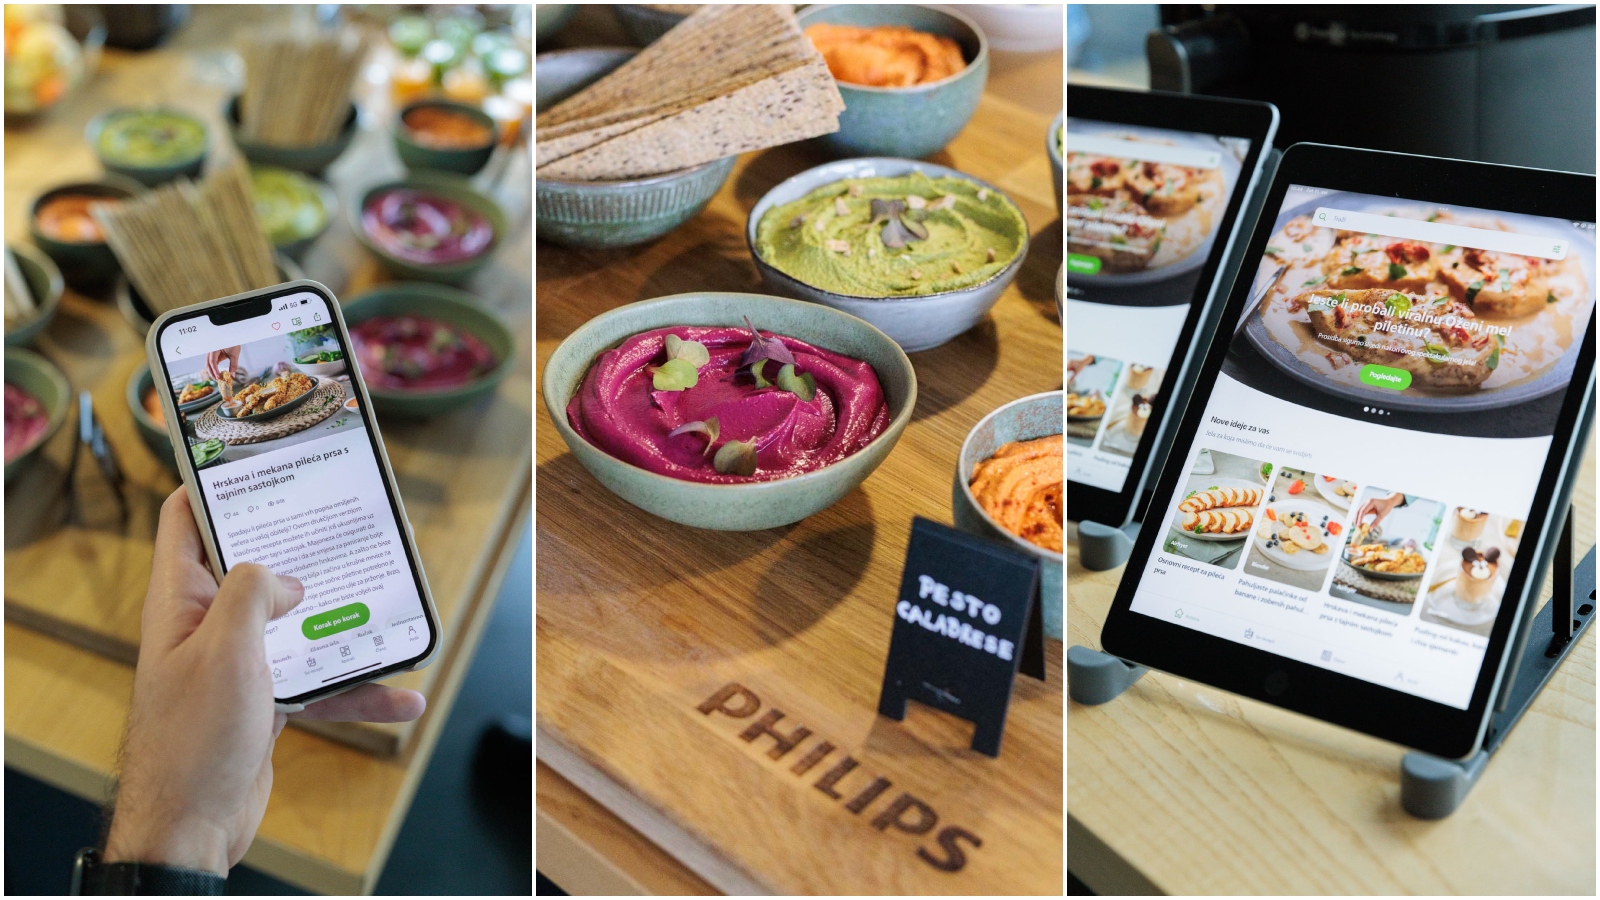 Predstavljena je revolucionarna aplikacija za pripremu jednostavnih, brzih i ukusnih obroka